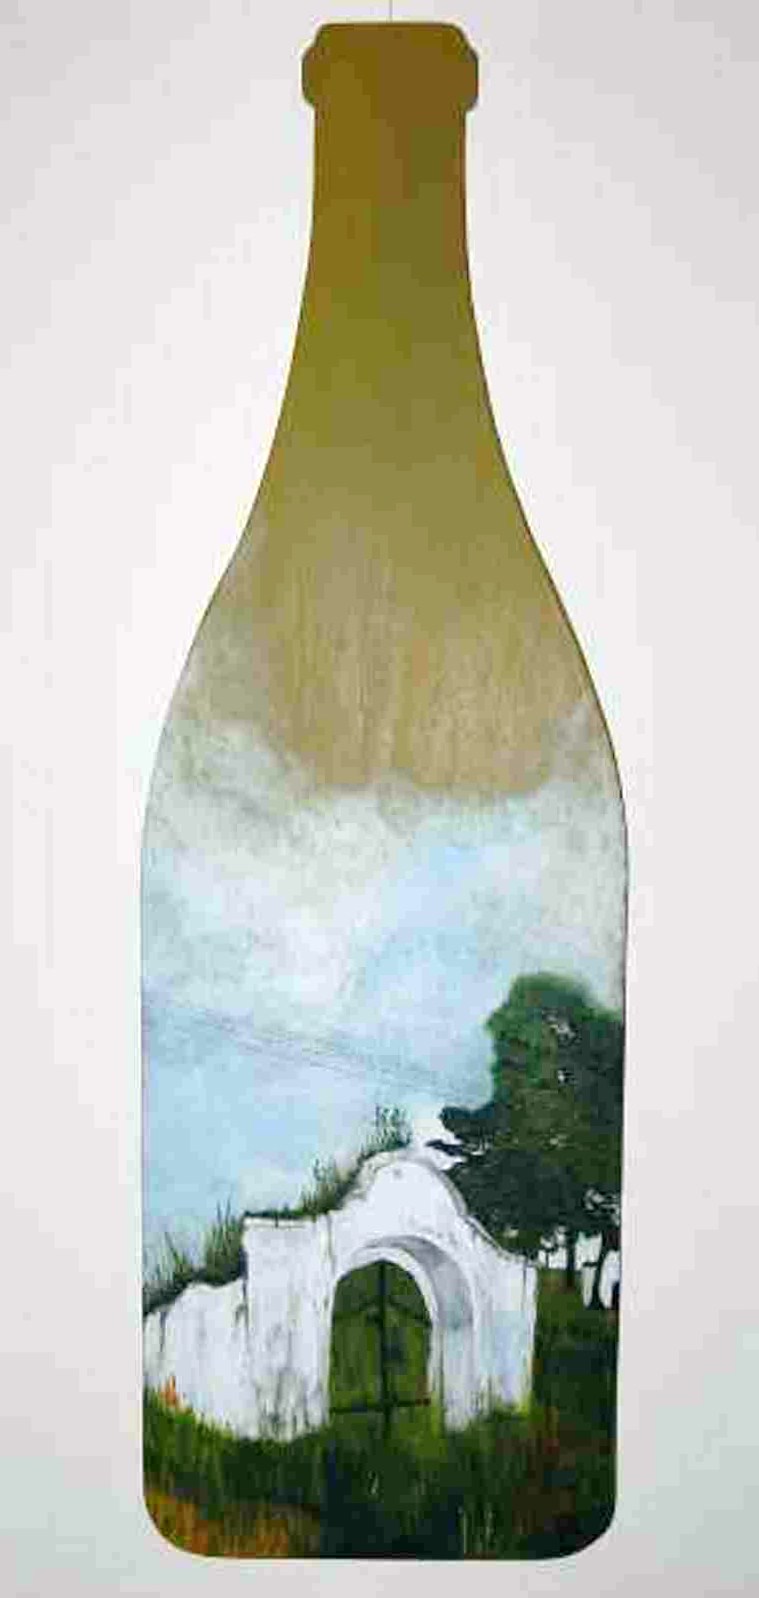 124  Flaschenbild  2006 Keller an der Riede Acryl auf Pappelsperrholz 38x120